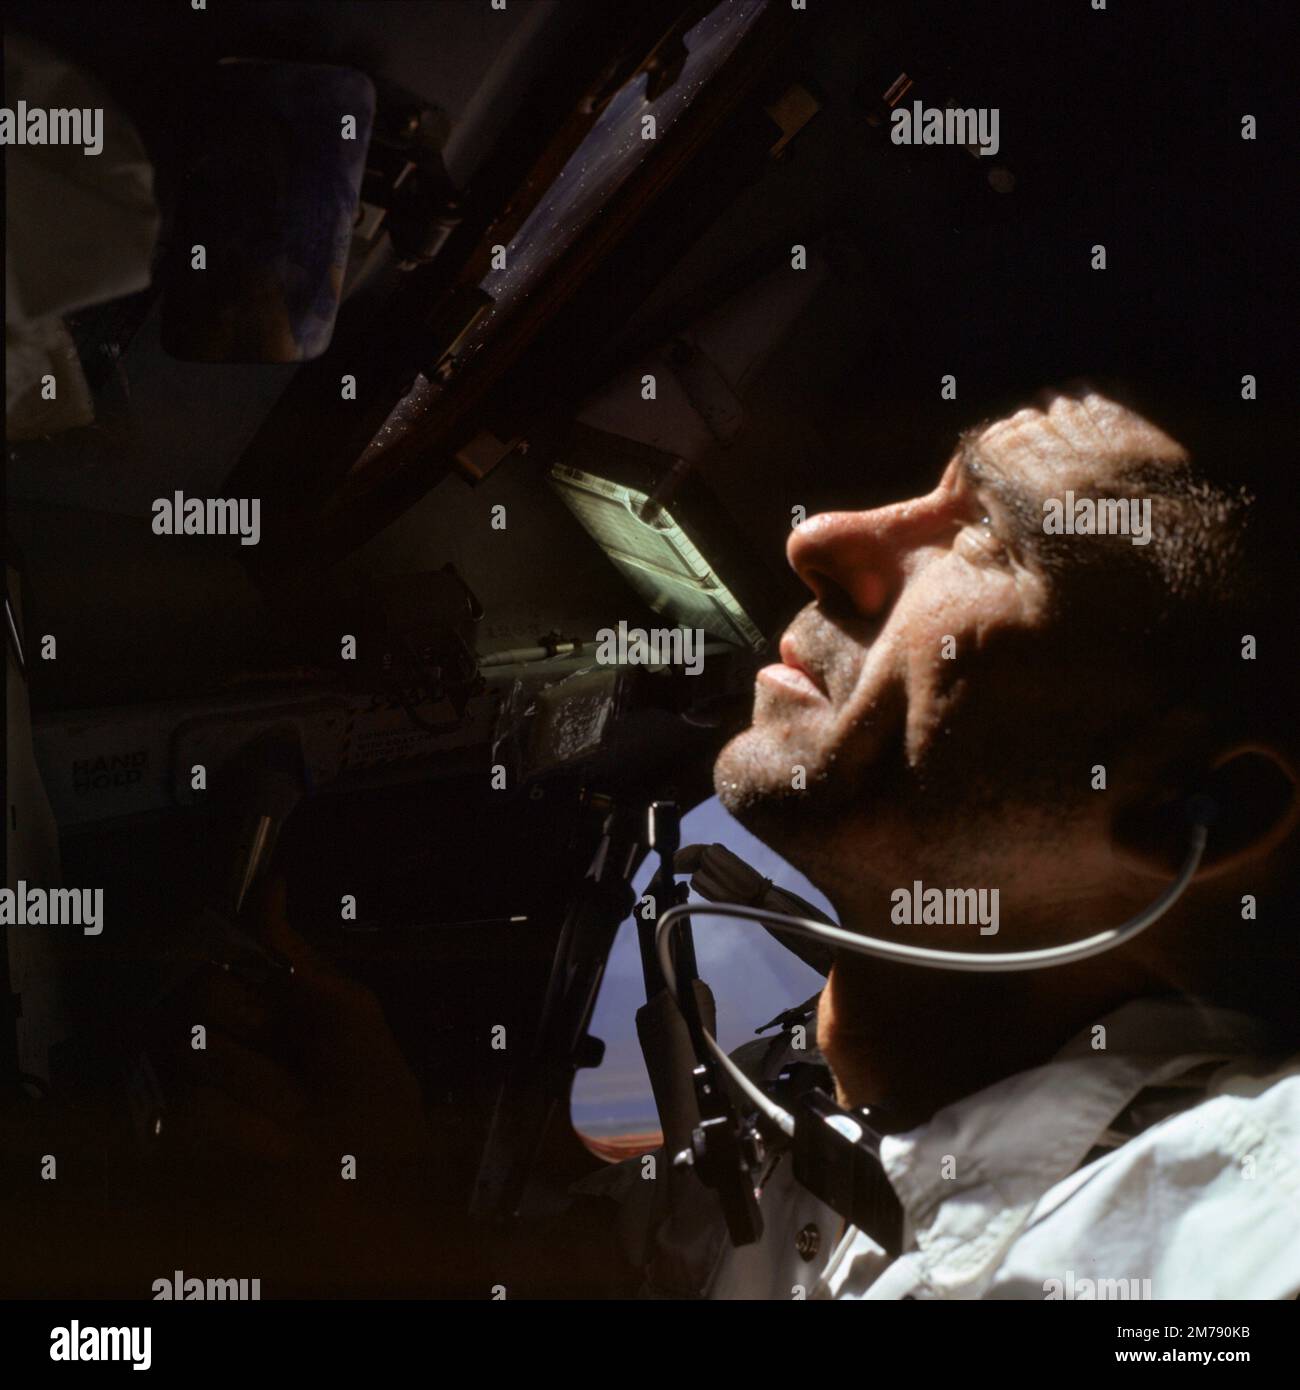 Orbita di terra, orbita di terra. 11 ottobre 1968. Walter Cunningham, primo astronauta della NASA Apollo VII, guarda fuori dalla finestra durante il primo giorno di volo nella capsula Apollo, 11 ottobre 1968 in Earth Orbit. Cunningham morì il 4 gennaio 2023 all'età di 90 anni, l'ultimo membro sopravvissuto della missione NASA Apollo 7. Foto Stock